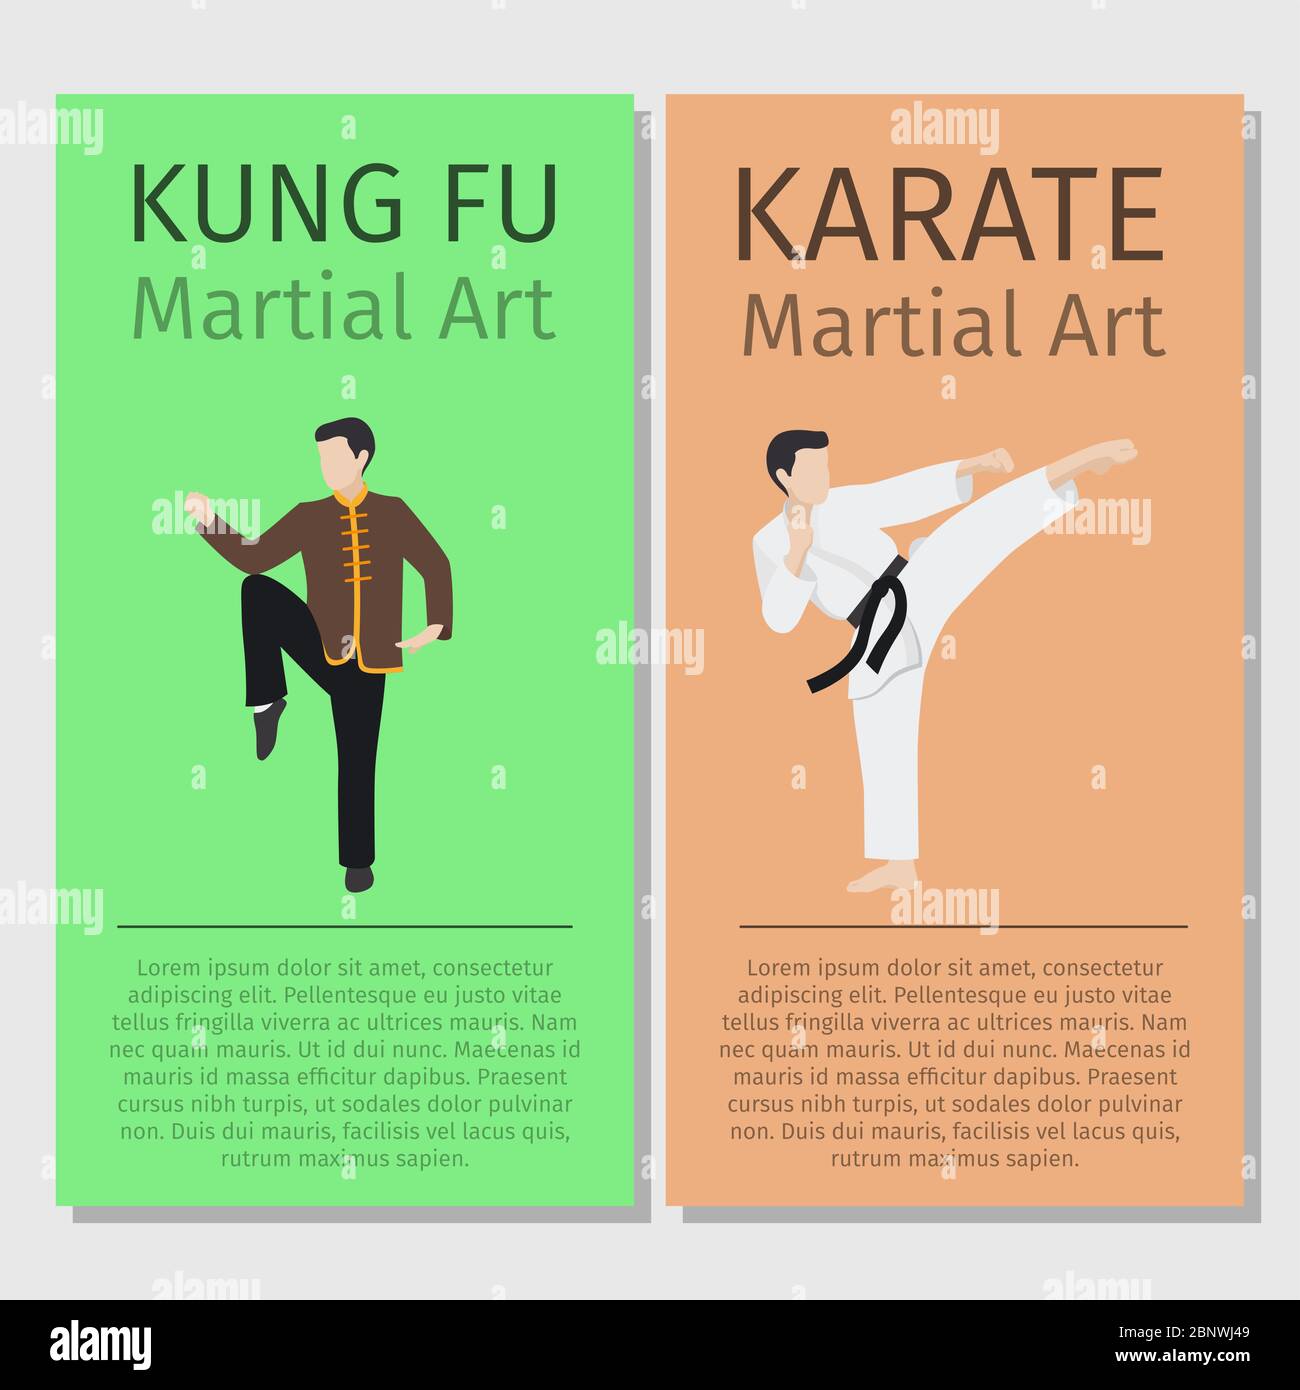 Asiatische Kampfkunst Vektor Flyer Set. Darstellung der Figuren Kung Fu und Karate man Stock Vektor